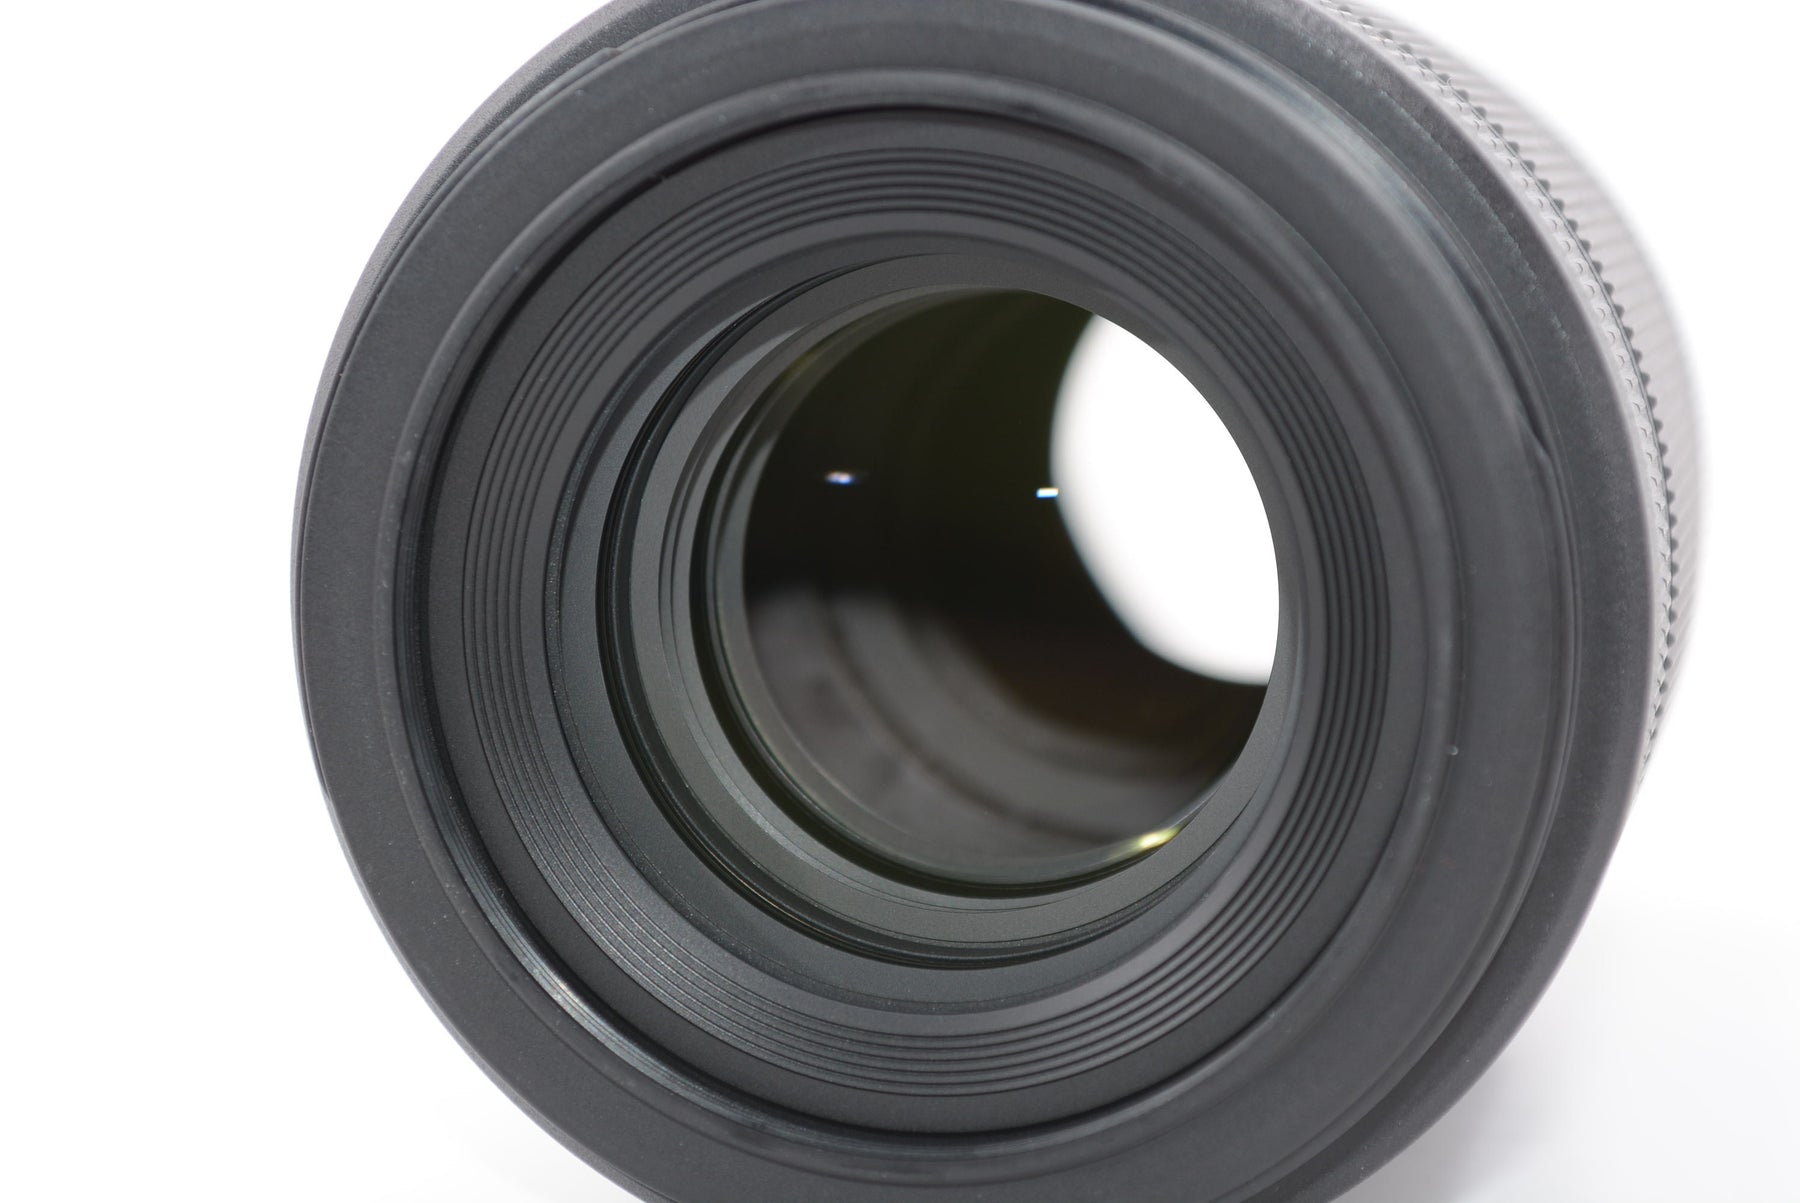 【外観特上級】Nikon 単焦点マクロレンズ NIKKOR Z MC 105mm f/2.8 VR S Zマウント フルサイズ対応 Sライン NZMC105